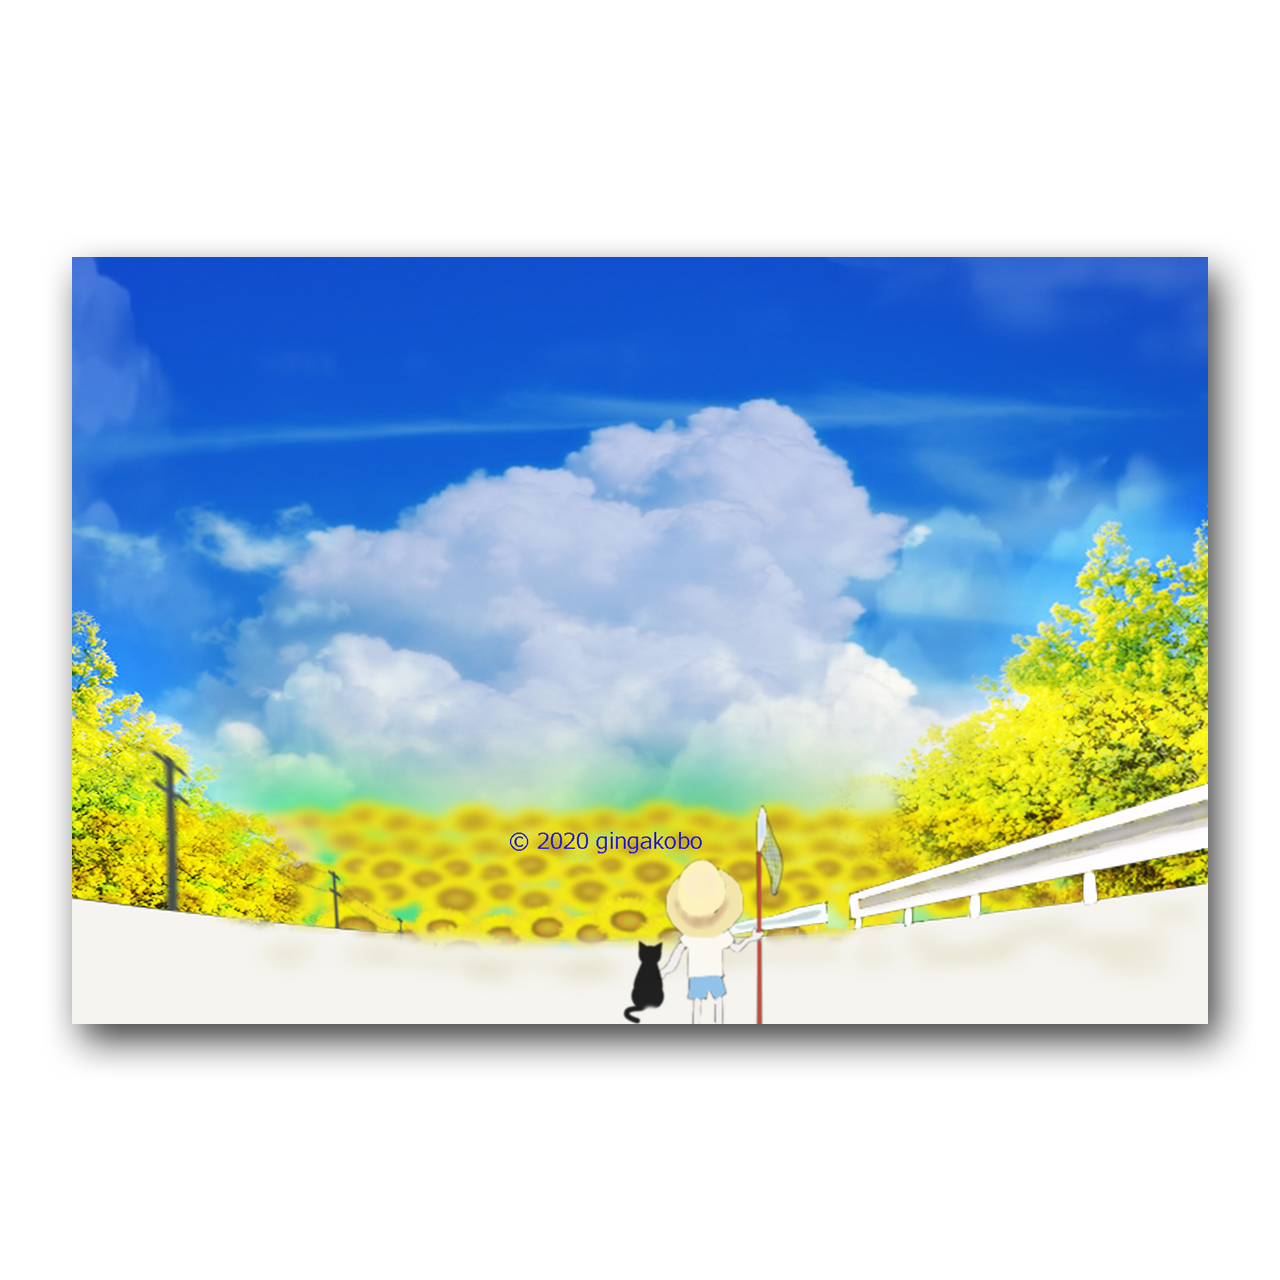 空ばかり見ていた夏の日 ほっこり癒しのイラストポストカード2枚組 No 1134 Iichi ハンドメイド クラフト作品 手仕事品の通販